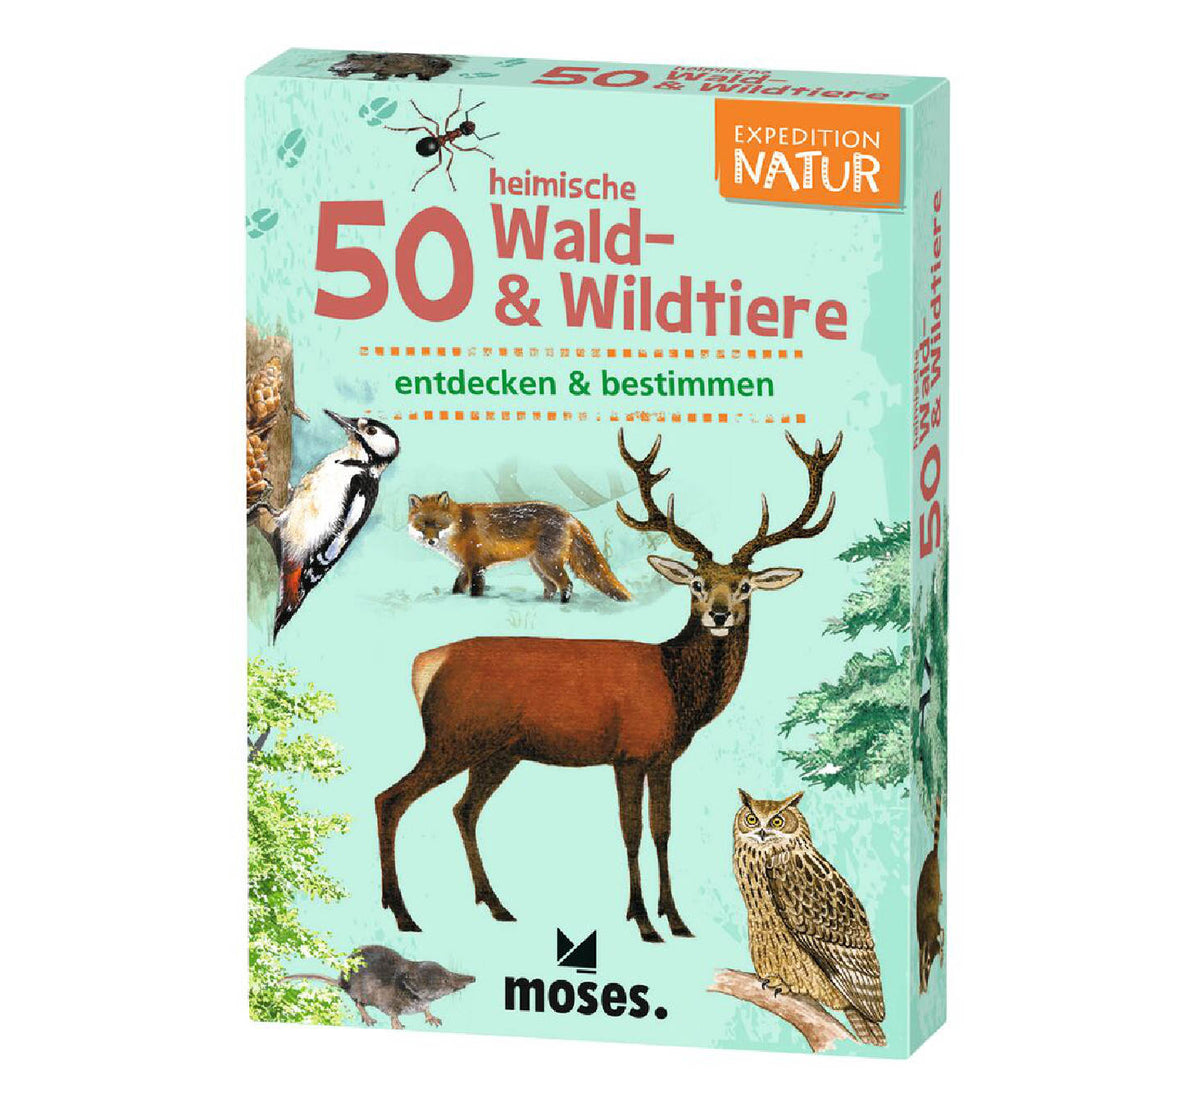 Karten-Set "50 Heimische Wald- & Wildtiere / Expedition Natur"